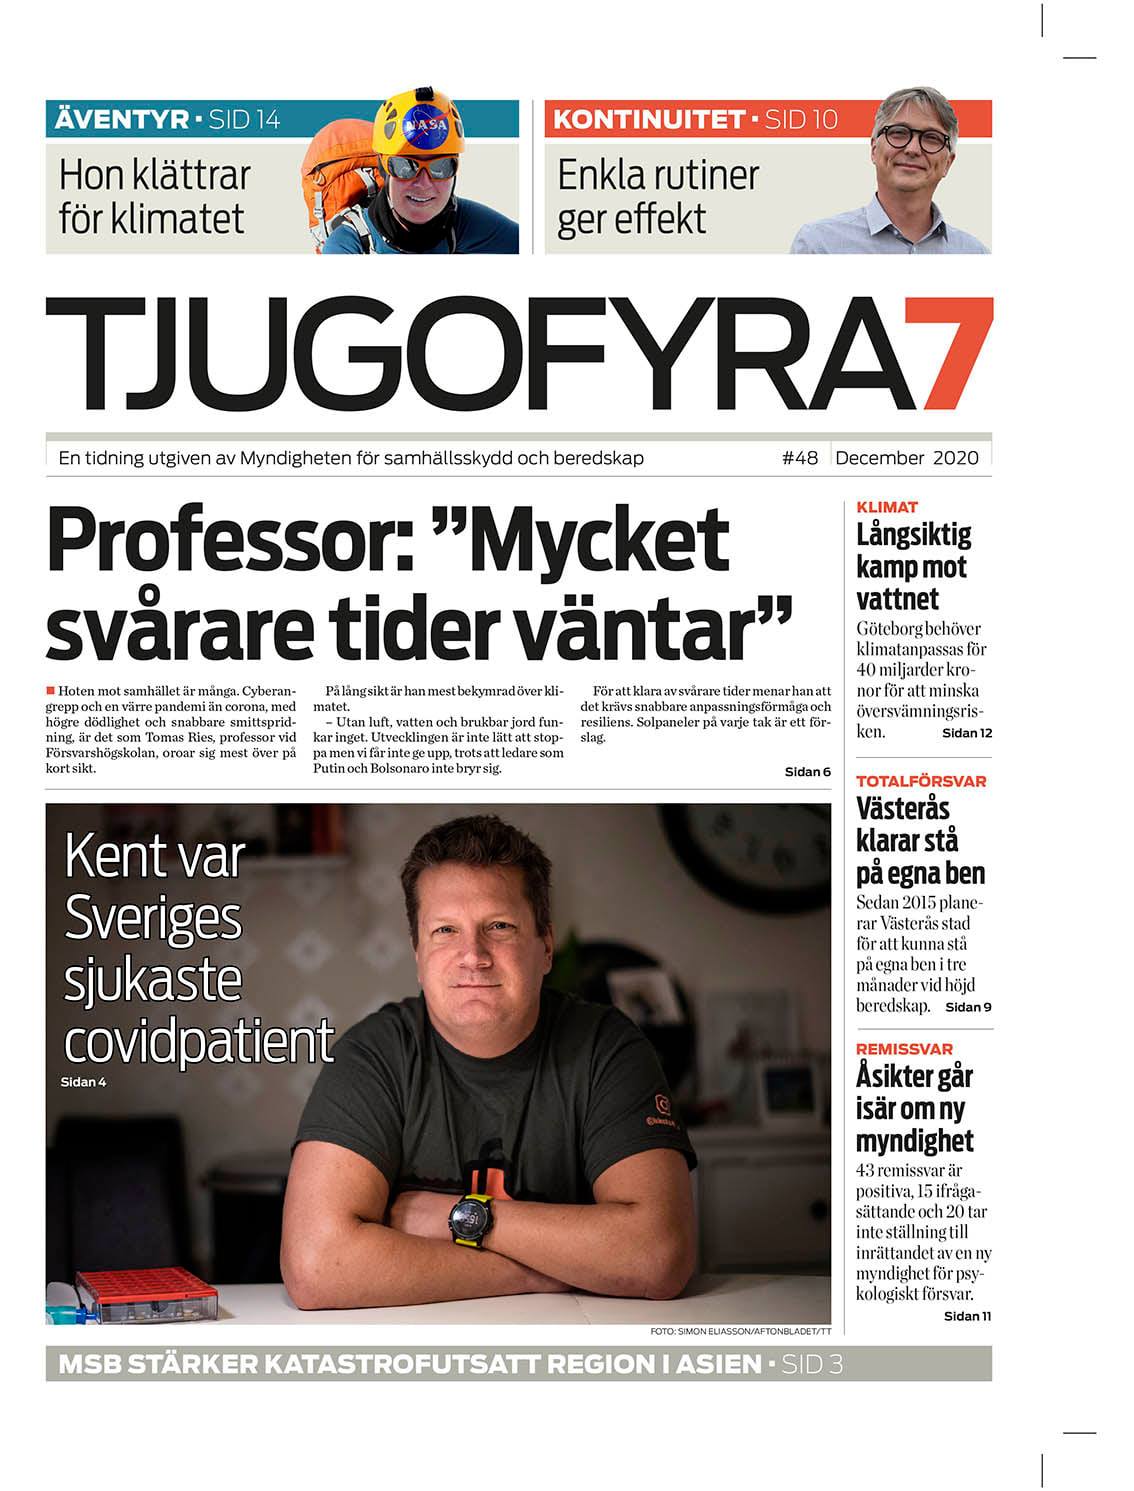 Omslag Tjugofyra7 nummer 48. Text: "Professor: "Mycket svårare tider väntar". 